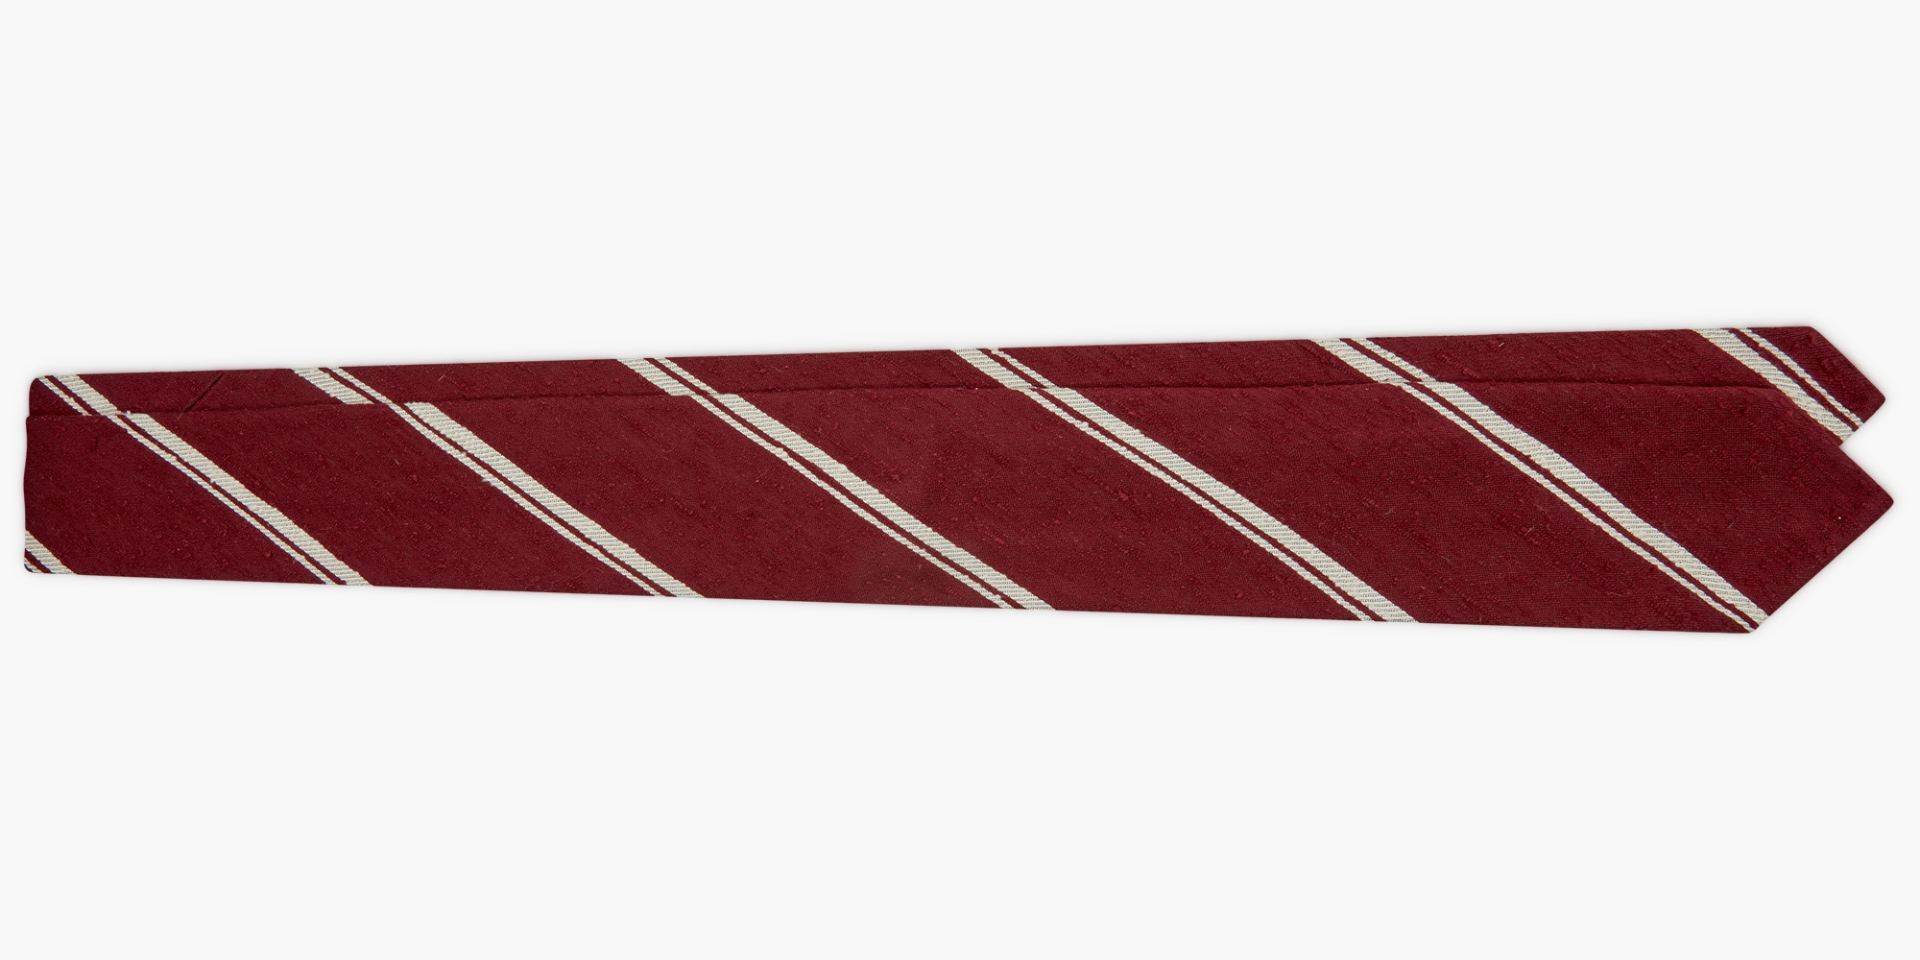 shantung silk tie red 3 fold - cravatta in seta shantung rosso 3 pieghe